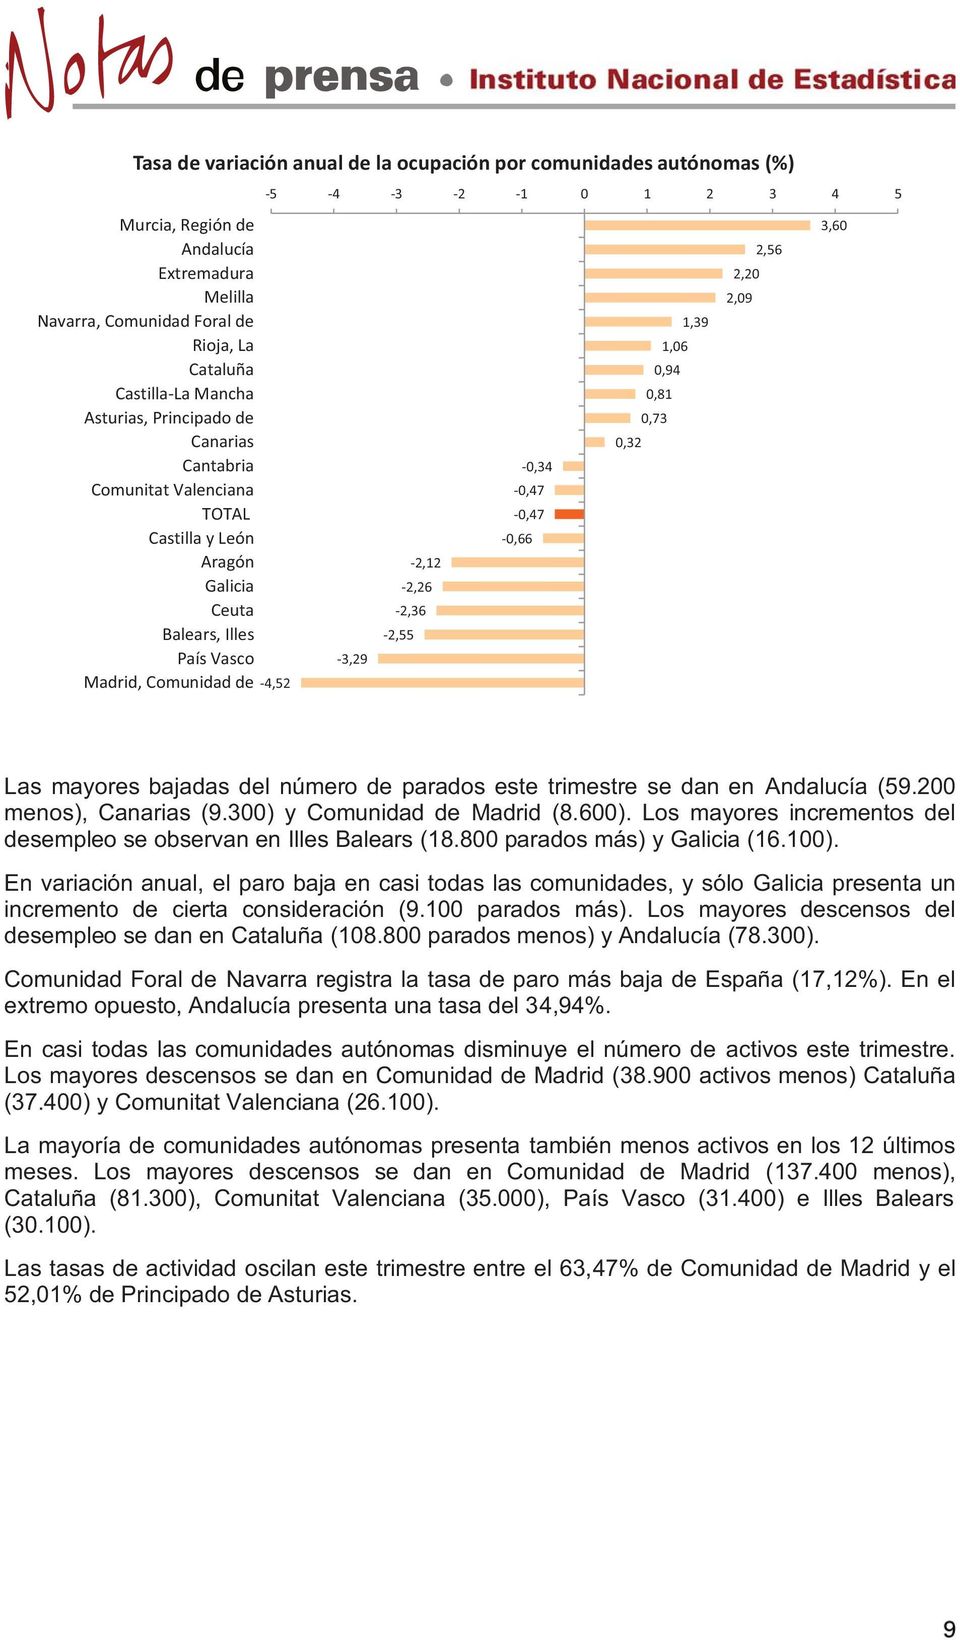 5-3,29-2,36-2,55-2,12-2,26-0,47-0,47-0,66-0,34 0,32 0,81 0,73 1,06 0,94 1,39 2,20 2,09 2,56 3,60 Las mayores bajadas del número de parados este trimestre se dan en Andalucía (59.